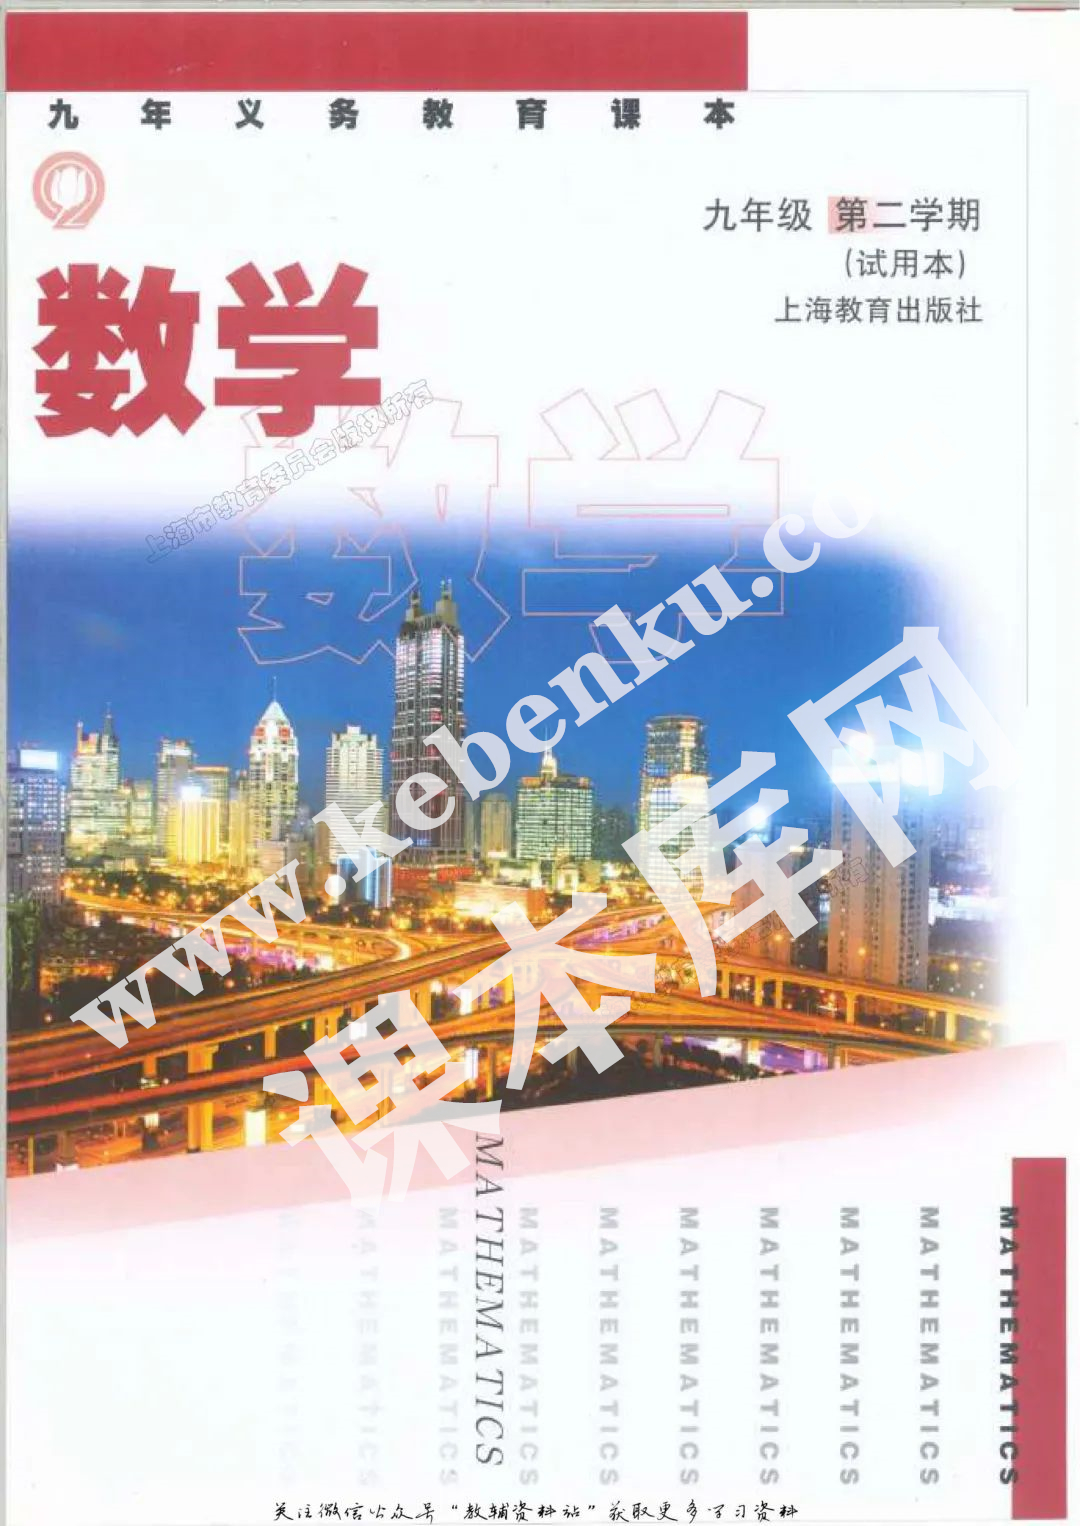 上海教育出版社九年义务教育课本九年级数学第二学期(试用本)电子课本